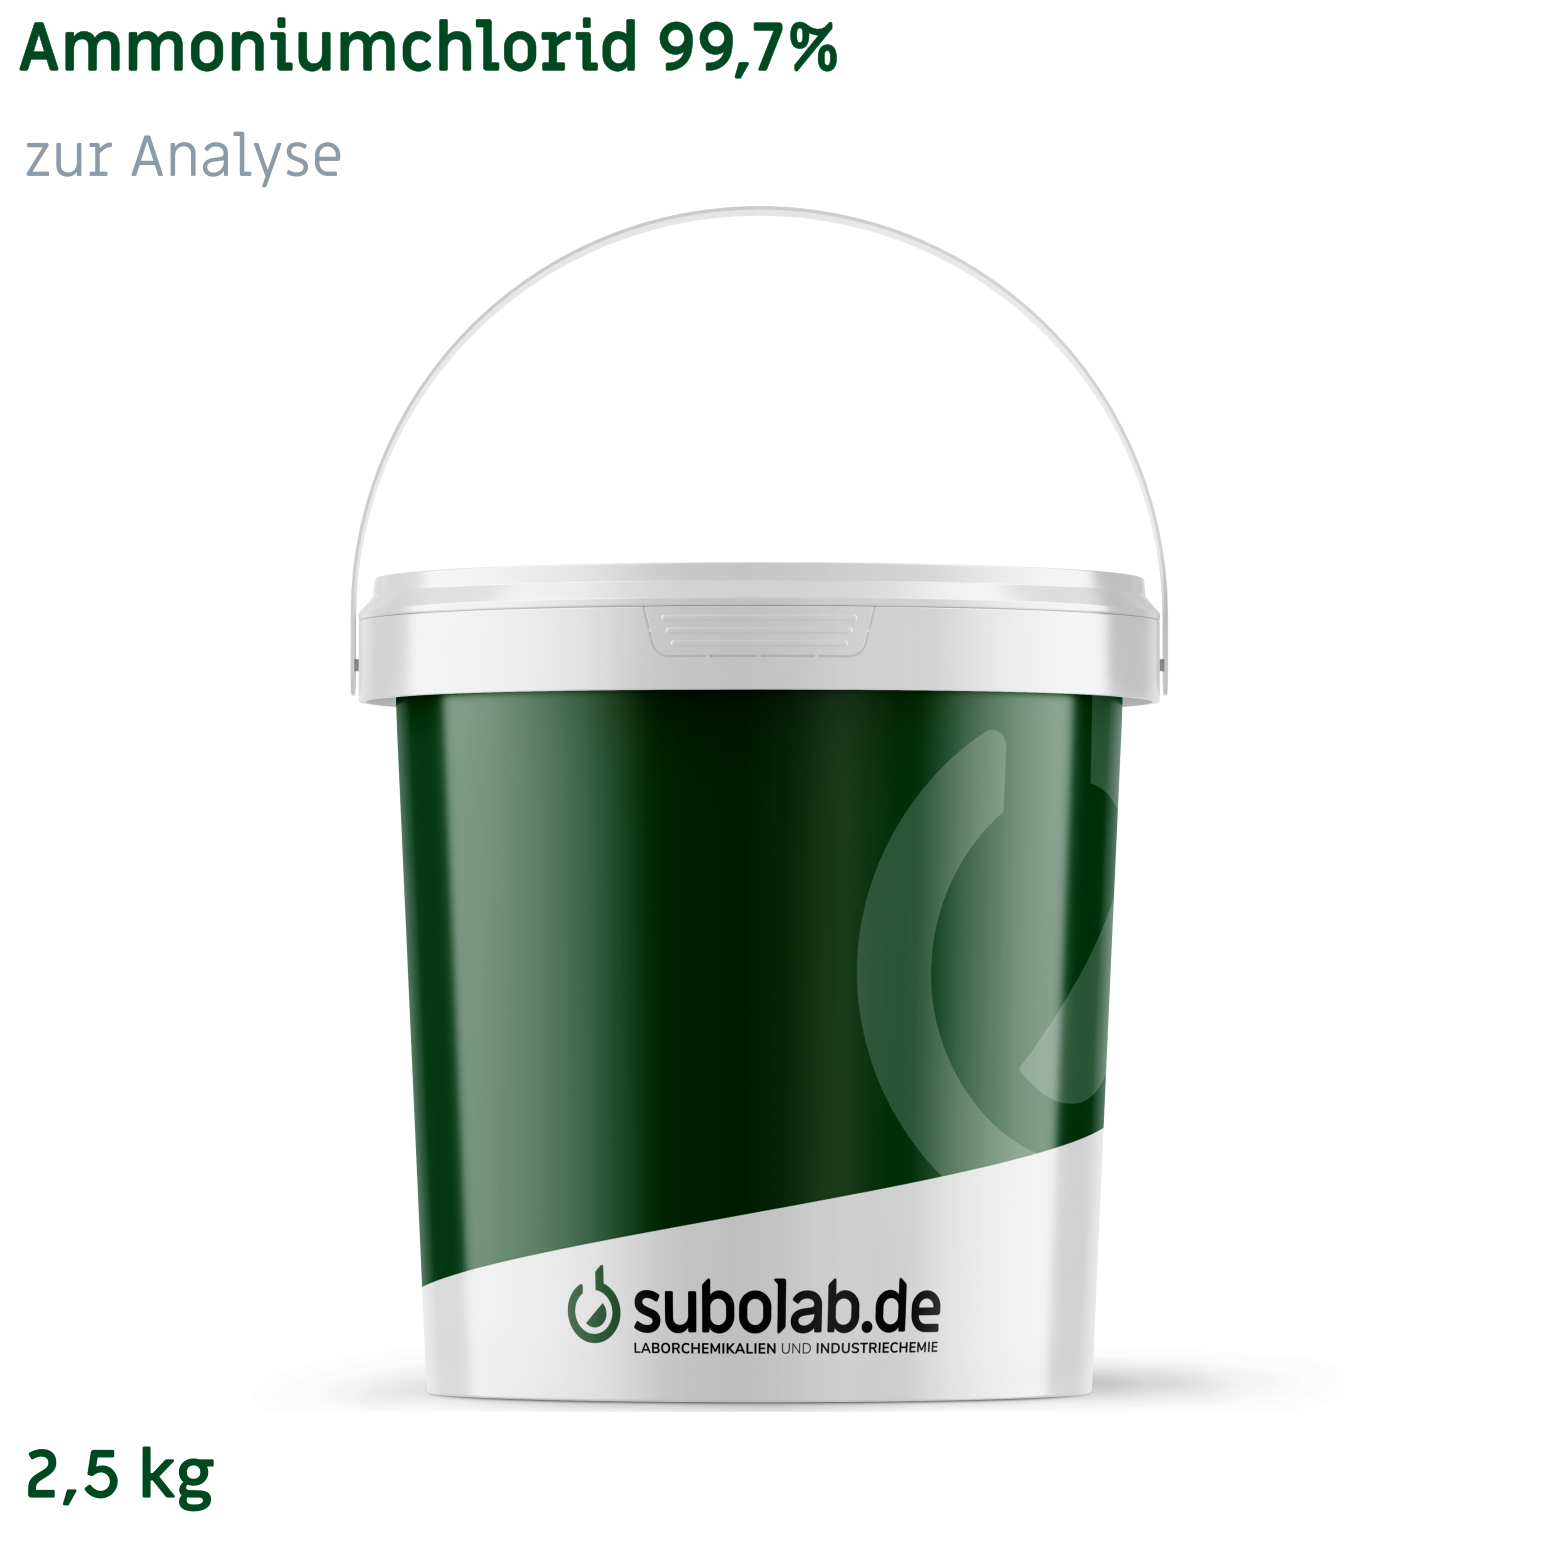 Bild von Ammoniumchlorid 99,7% zur Analyse (2,5 kg)